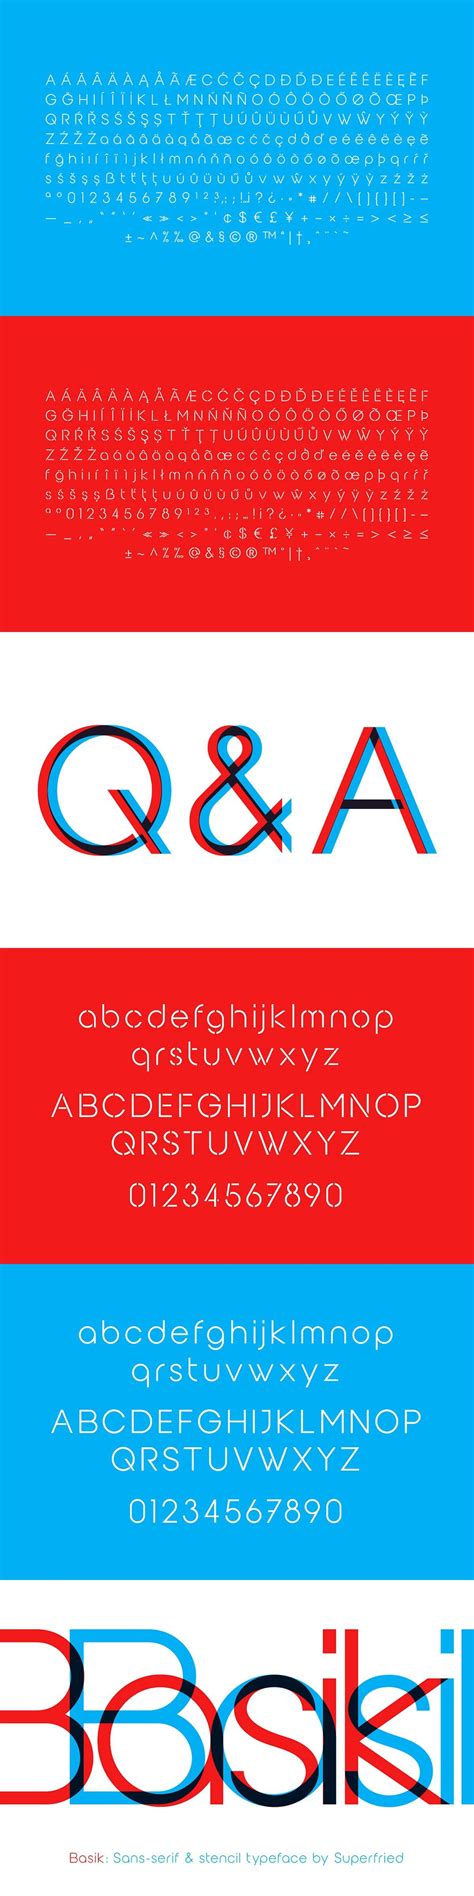 Basik | Sans Font | Book + Stencil | Stencil font, Sans serif fonts, Stencils